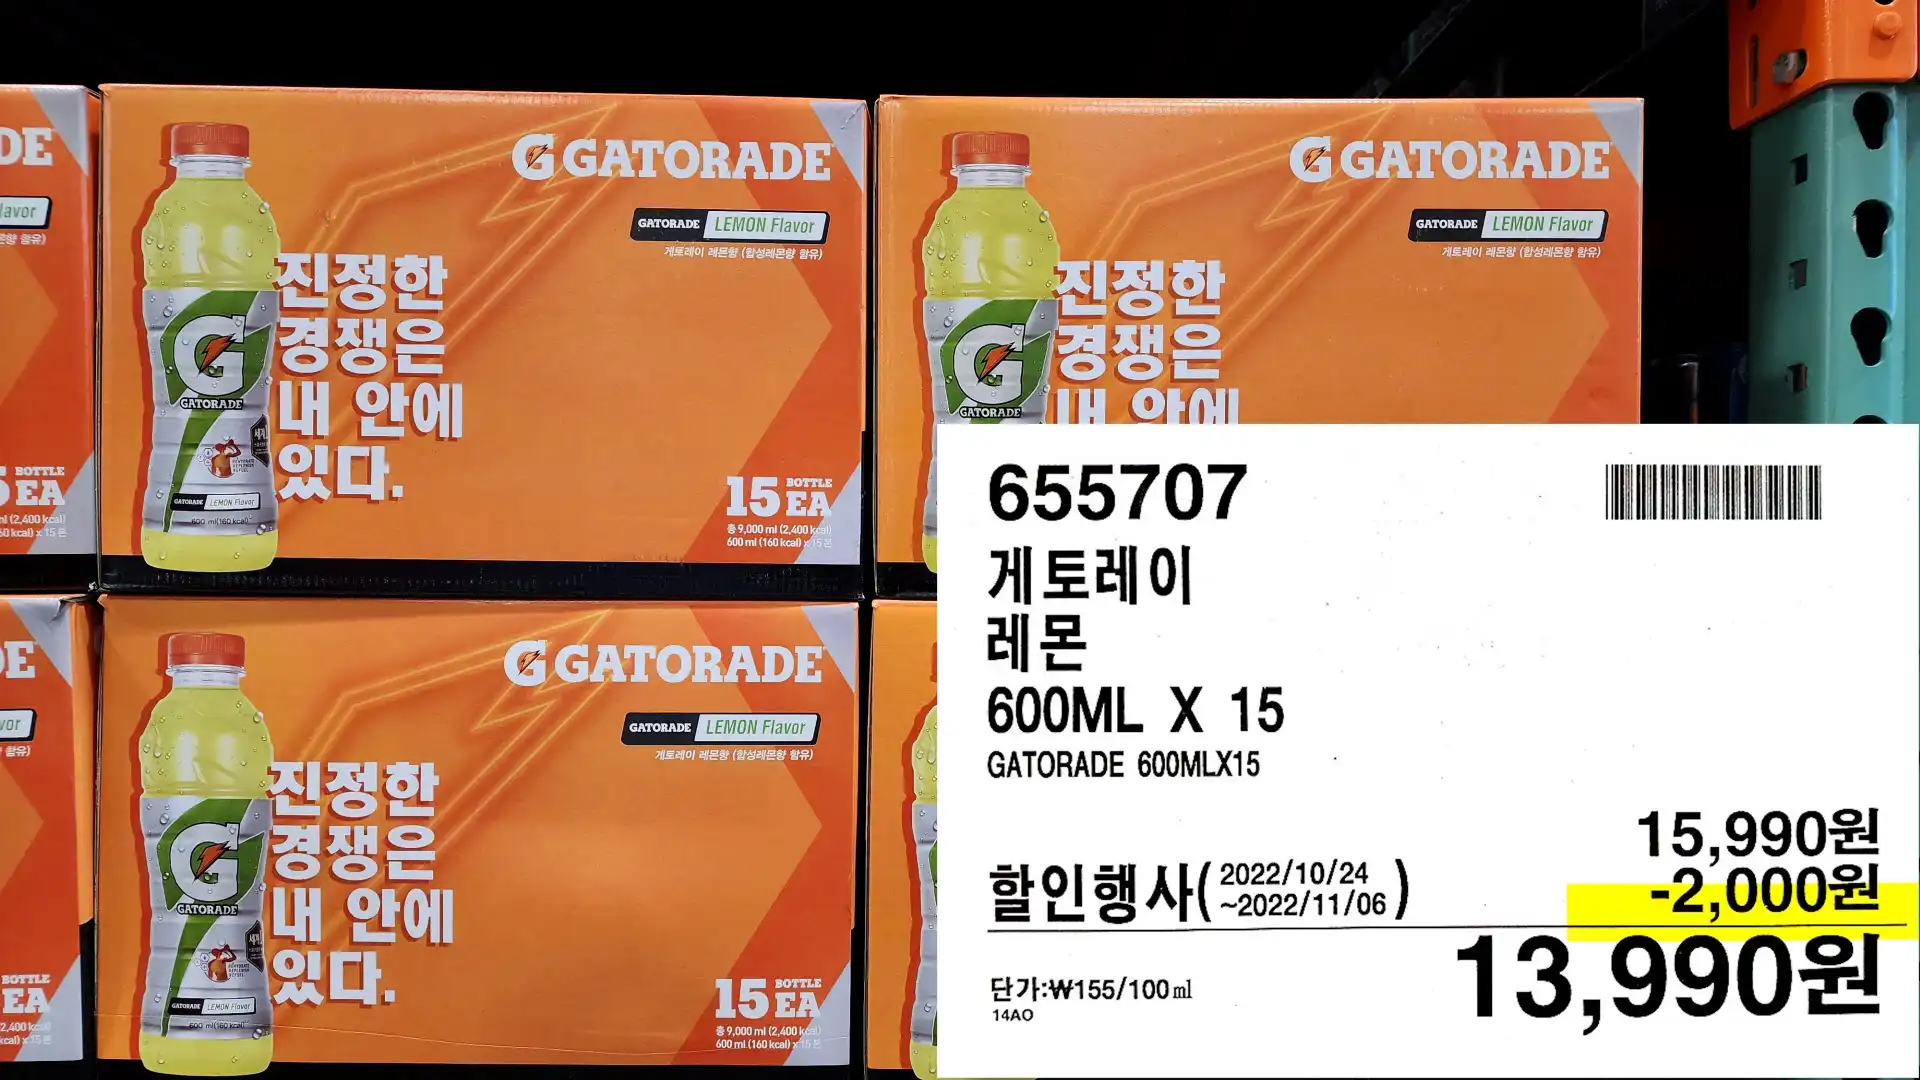 게토레이
레몬
600ML X 15
GATORADE 600MLX15
13&#44;990원